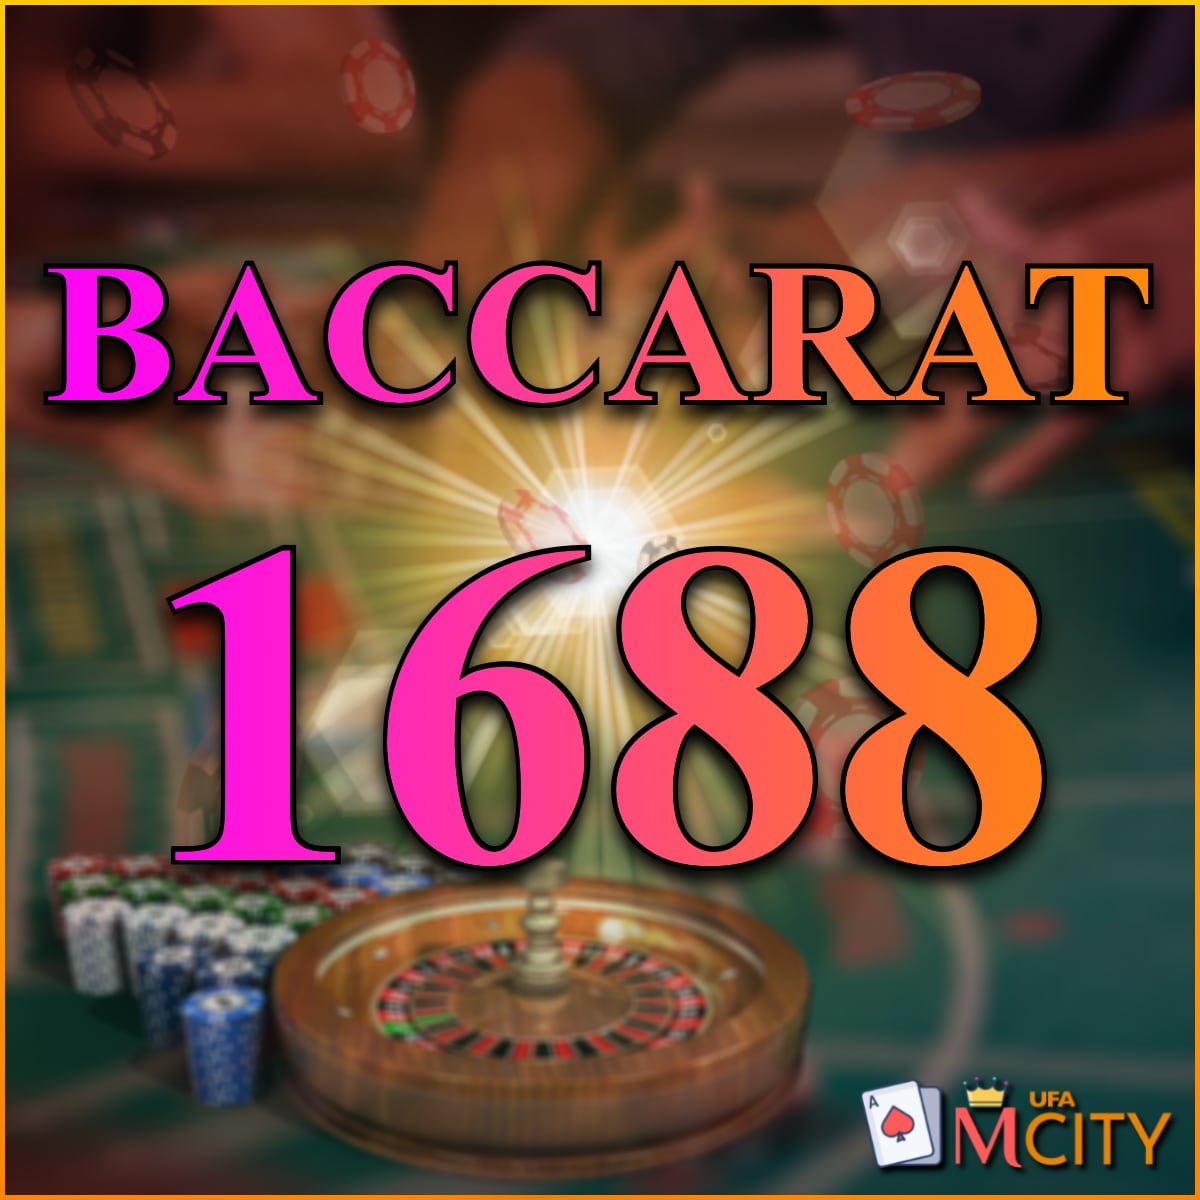 Baccarat1688